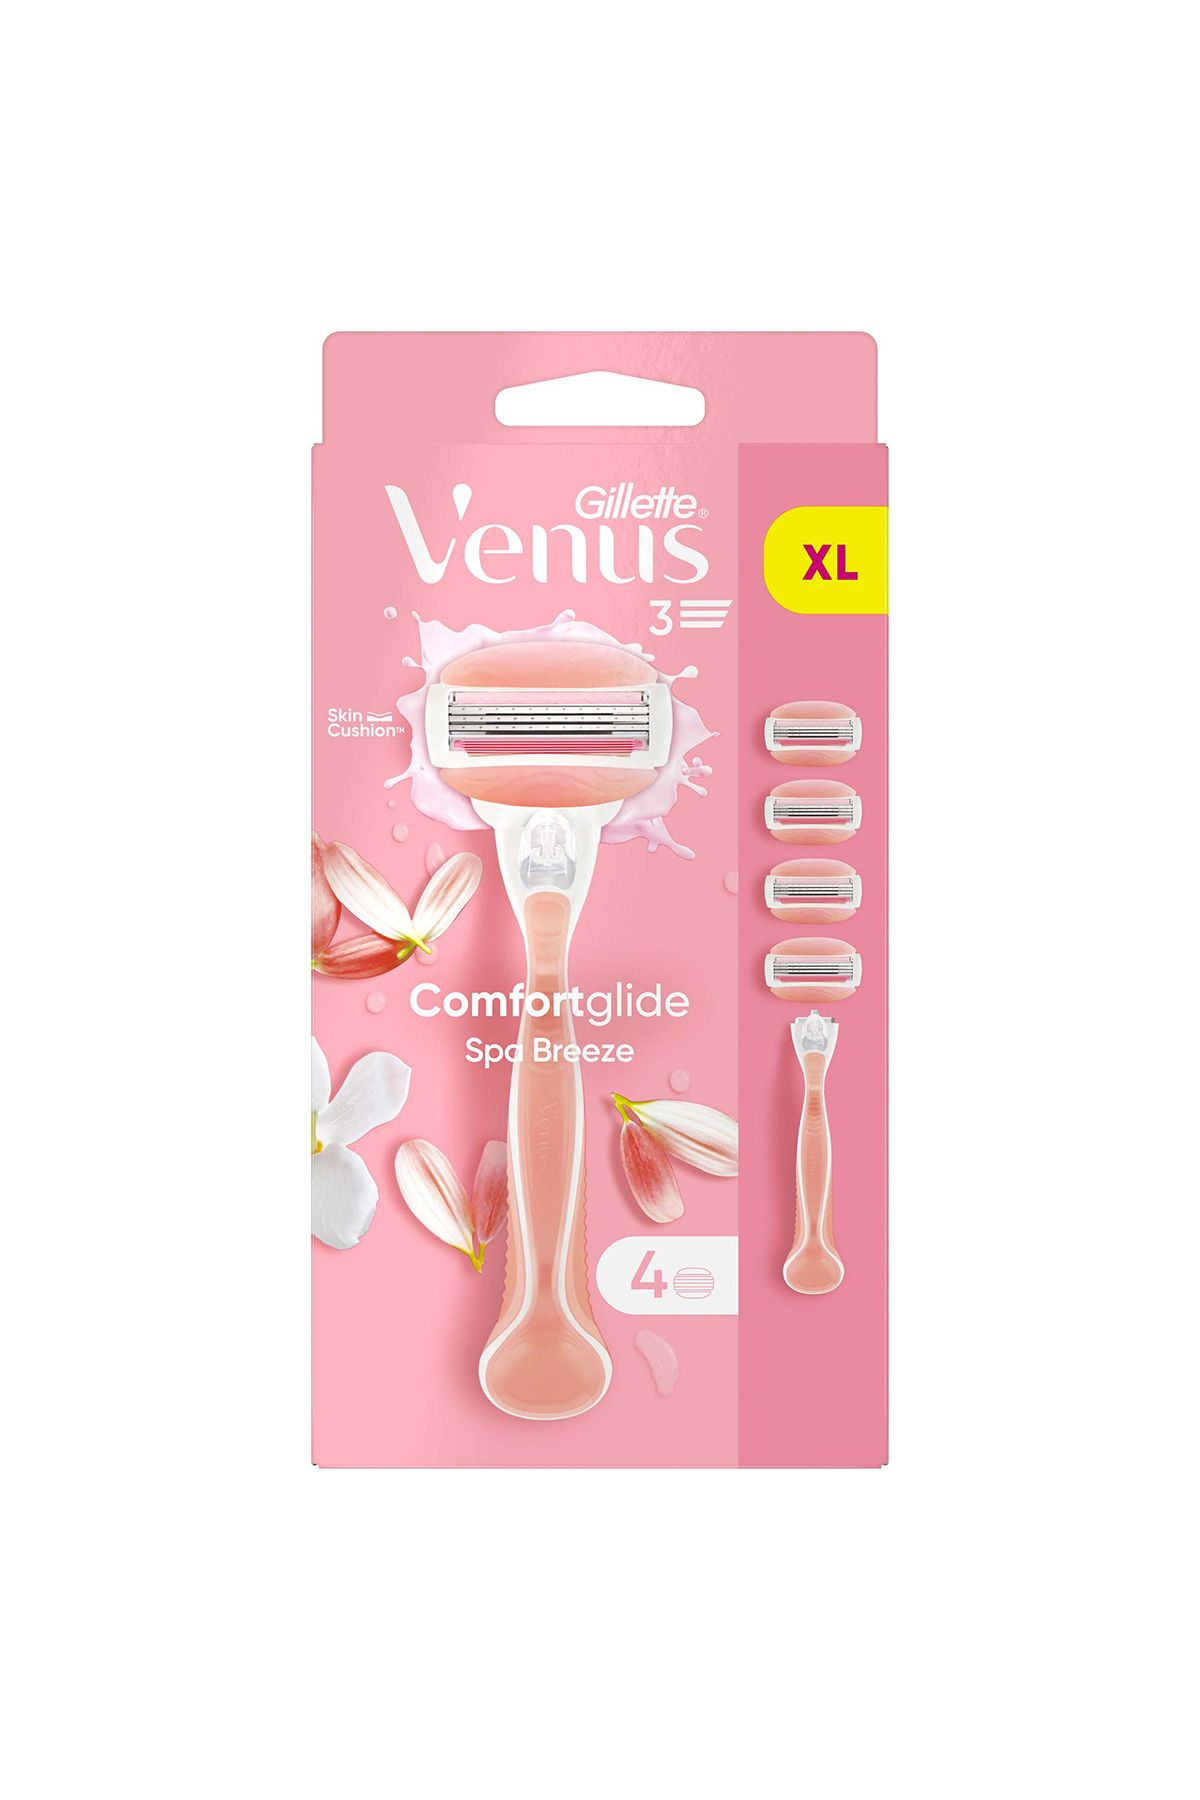 Venus Comfortglide Spa Breeze Kadın Tıraş Makinesi 4 Adet Yedek Tıraş Bıçağı